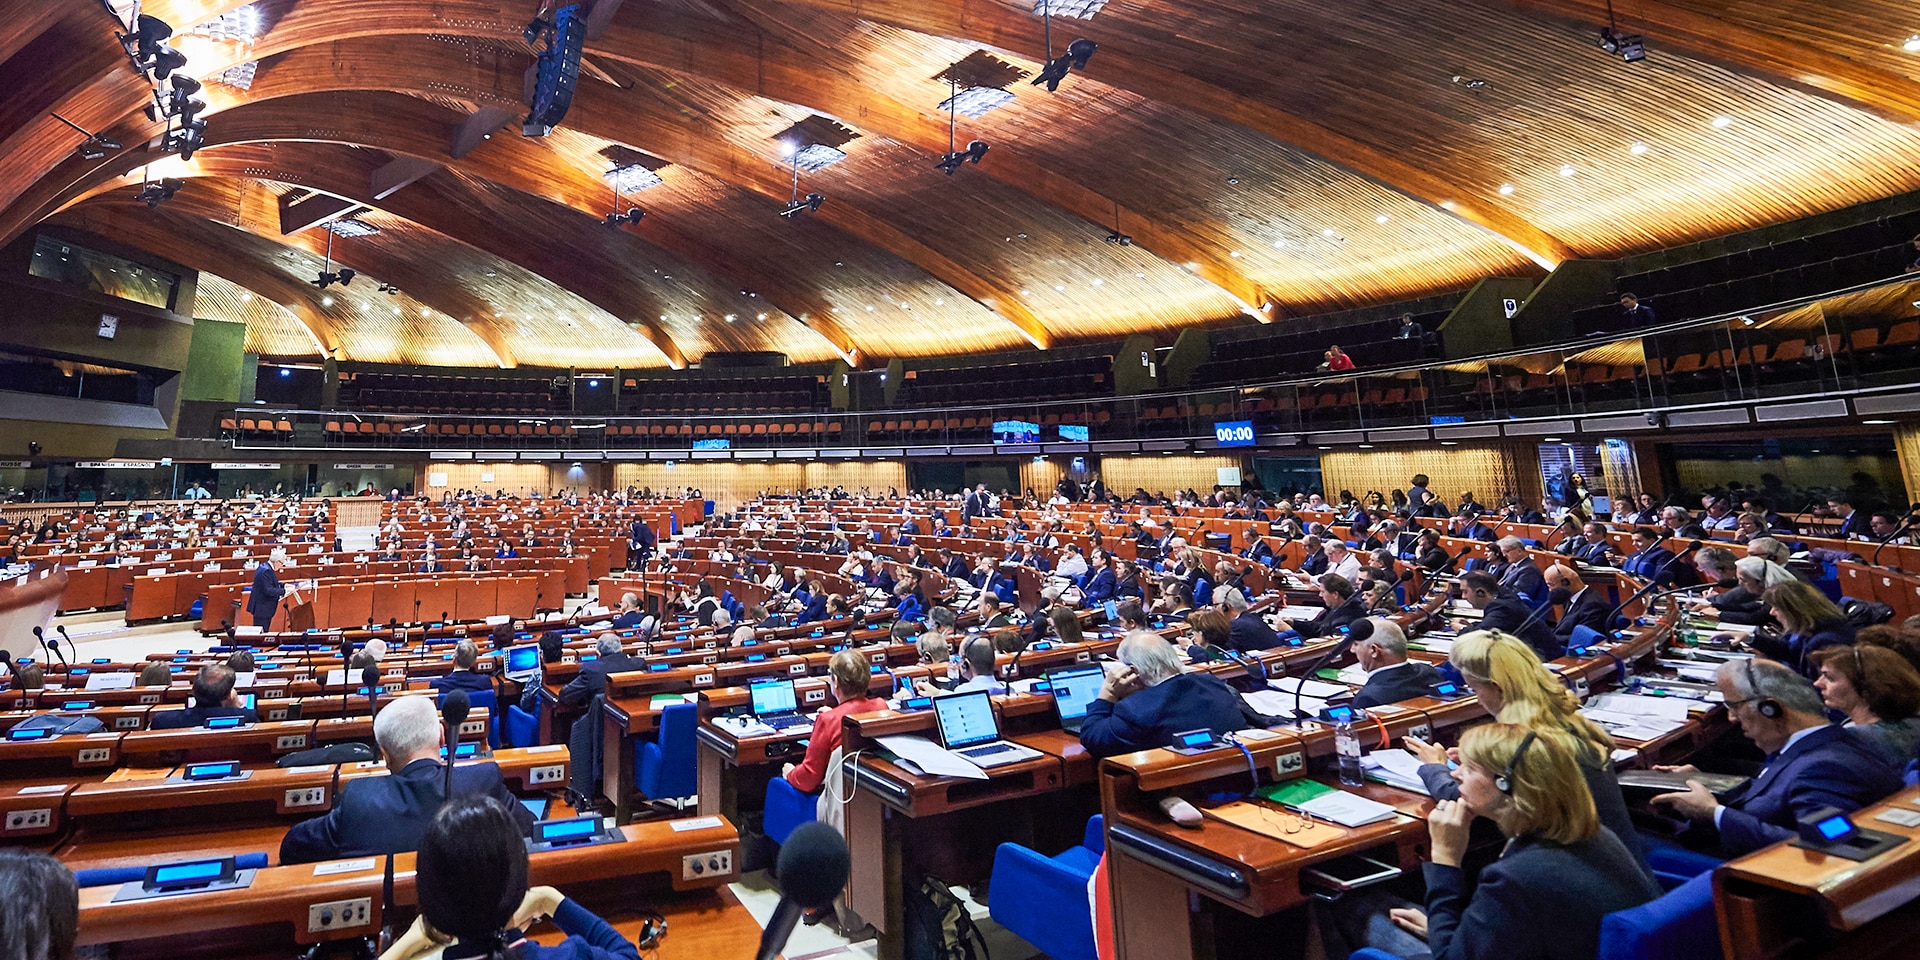 Una grande sala con un tetto in legno e file di sedili a semicerchio dove siedono i membri dell'Assemblea parlamentare del Consiglio d'Europa.